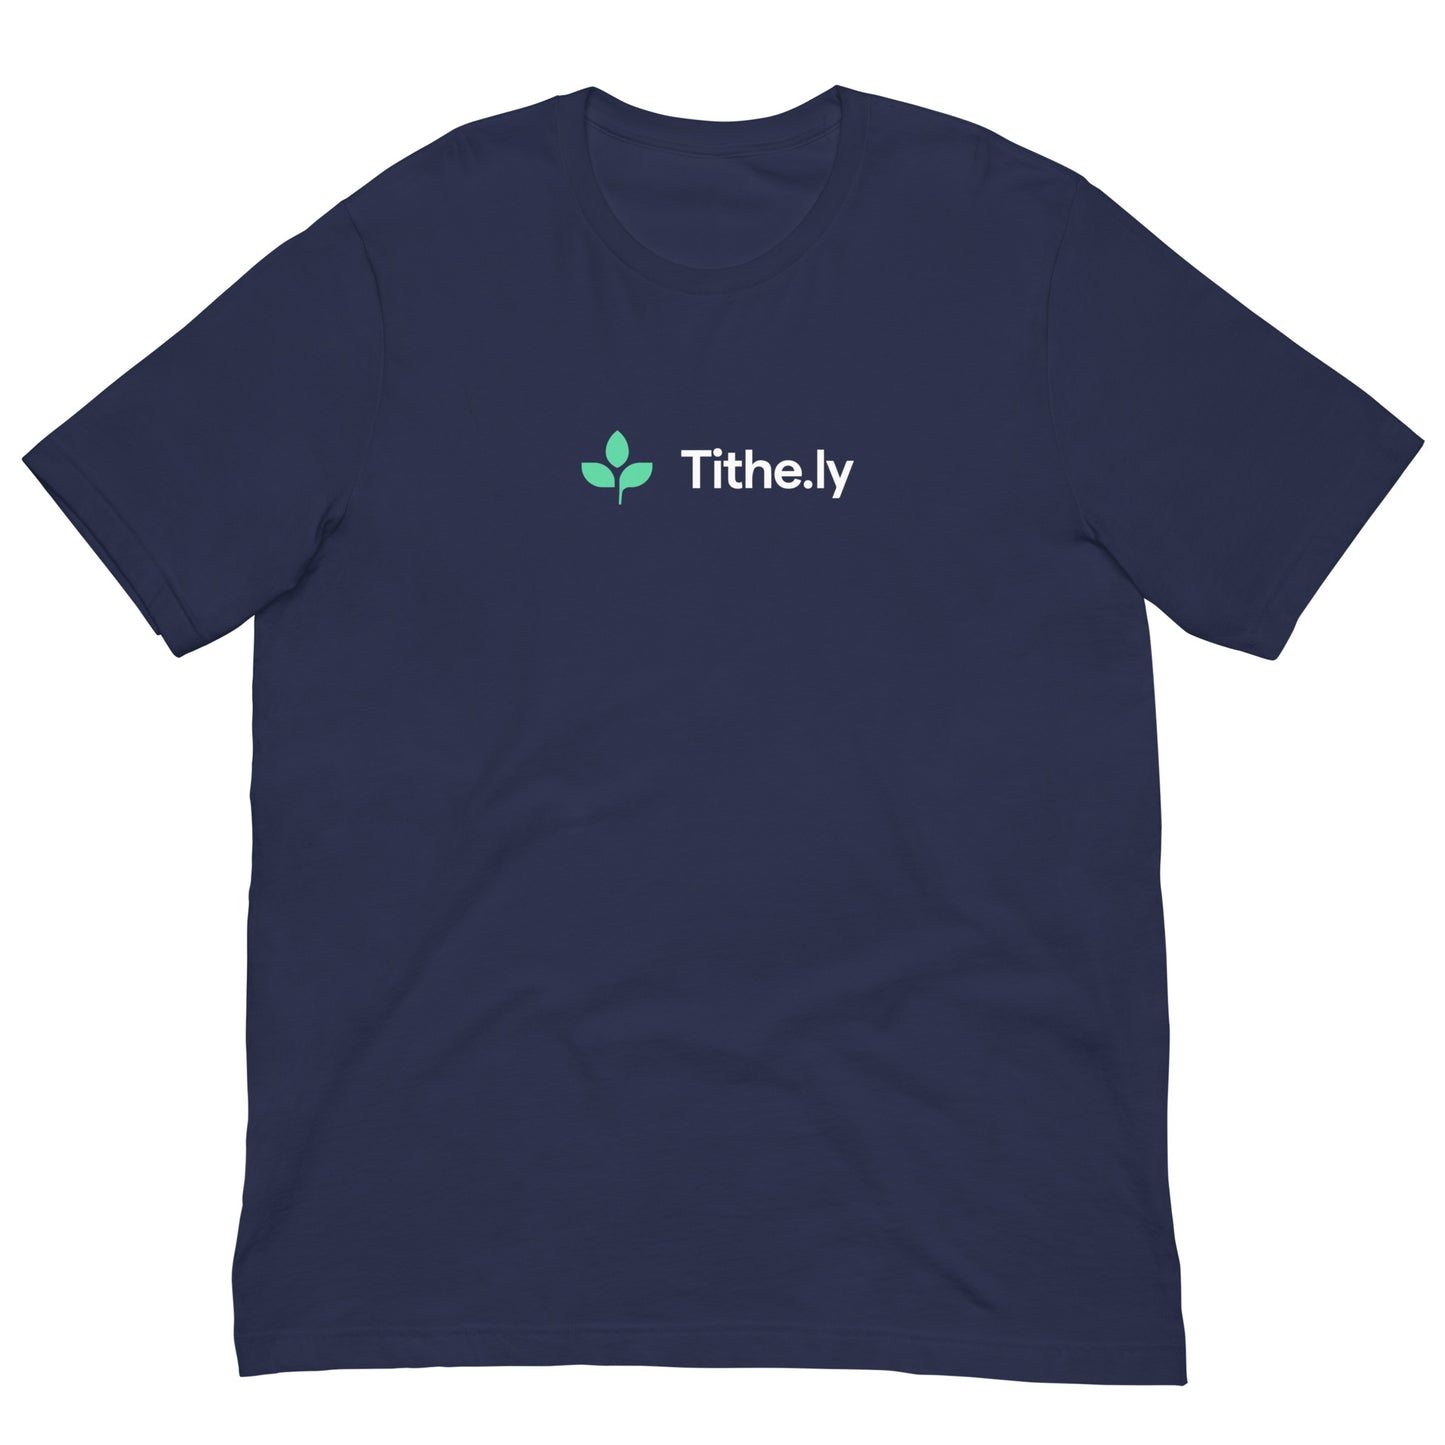 Tithely Unisex T-Shirt